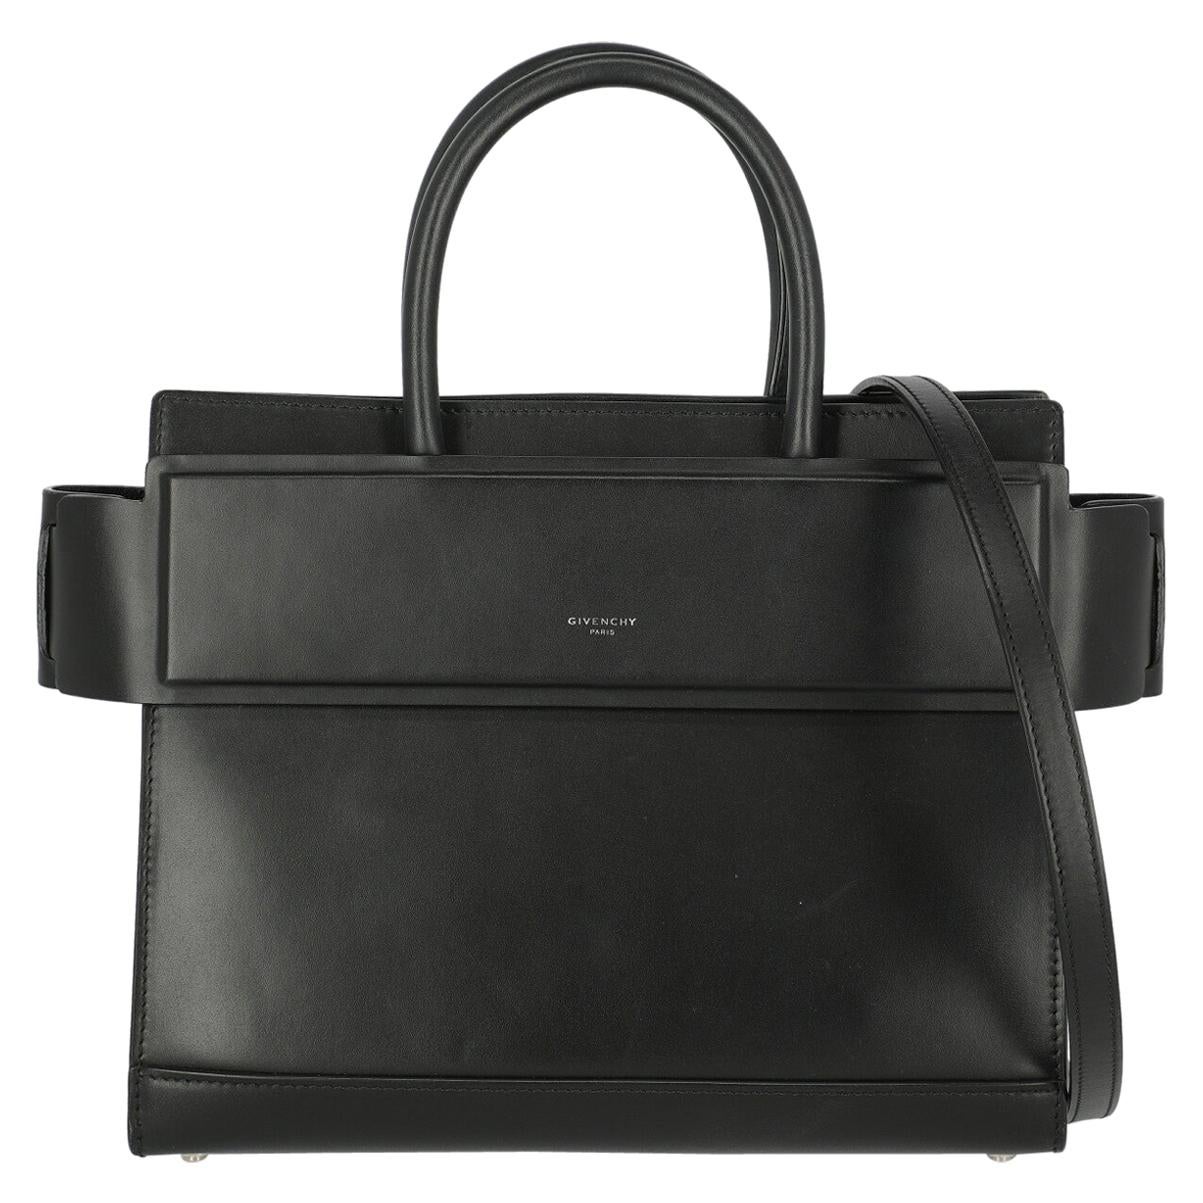 Givenchy Woman Handbag Horizon Black Leather For Sale